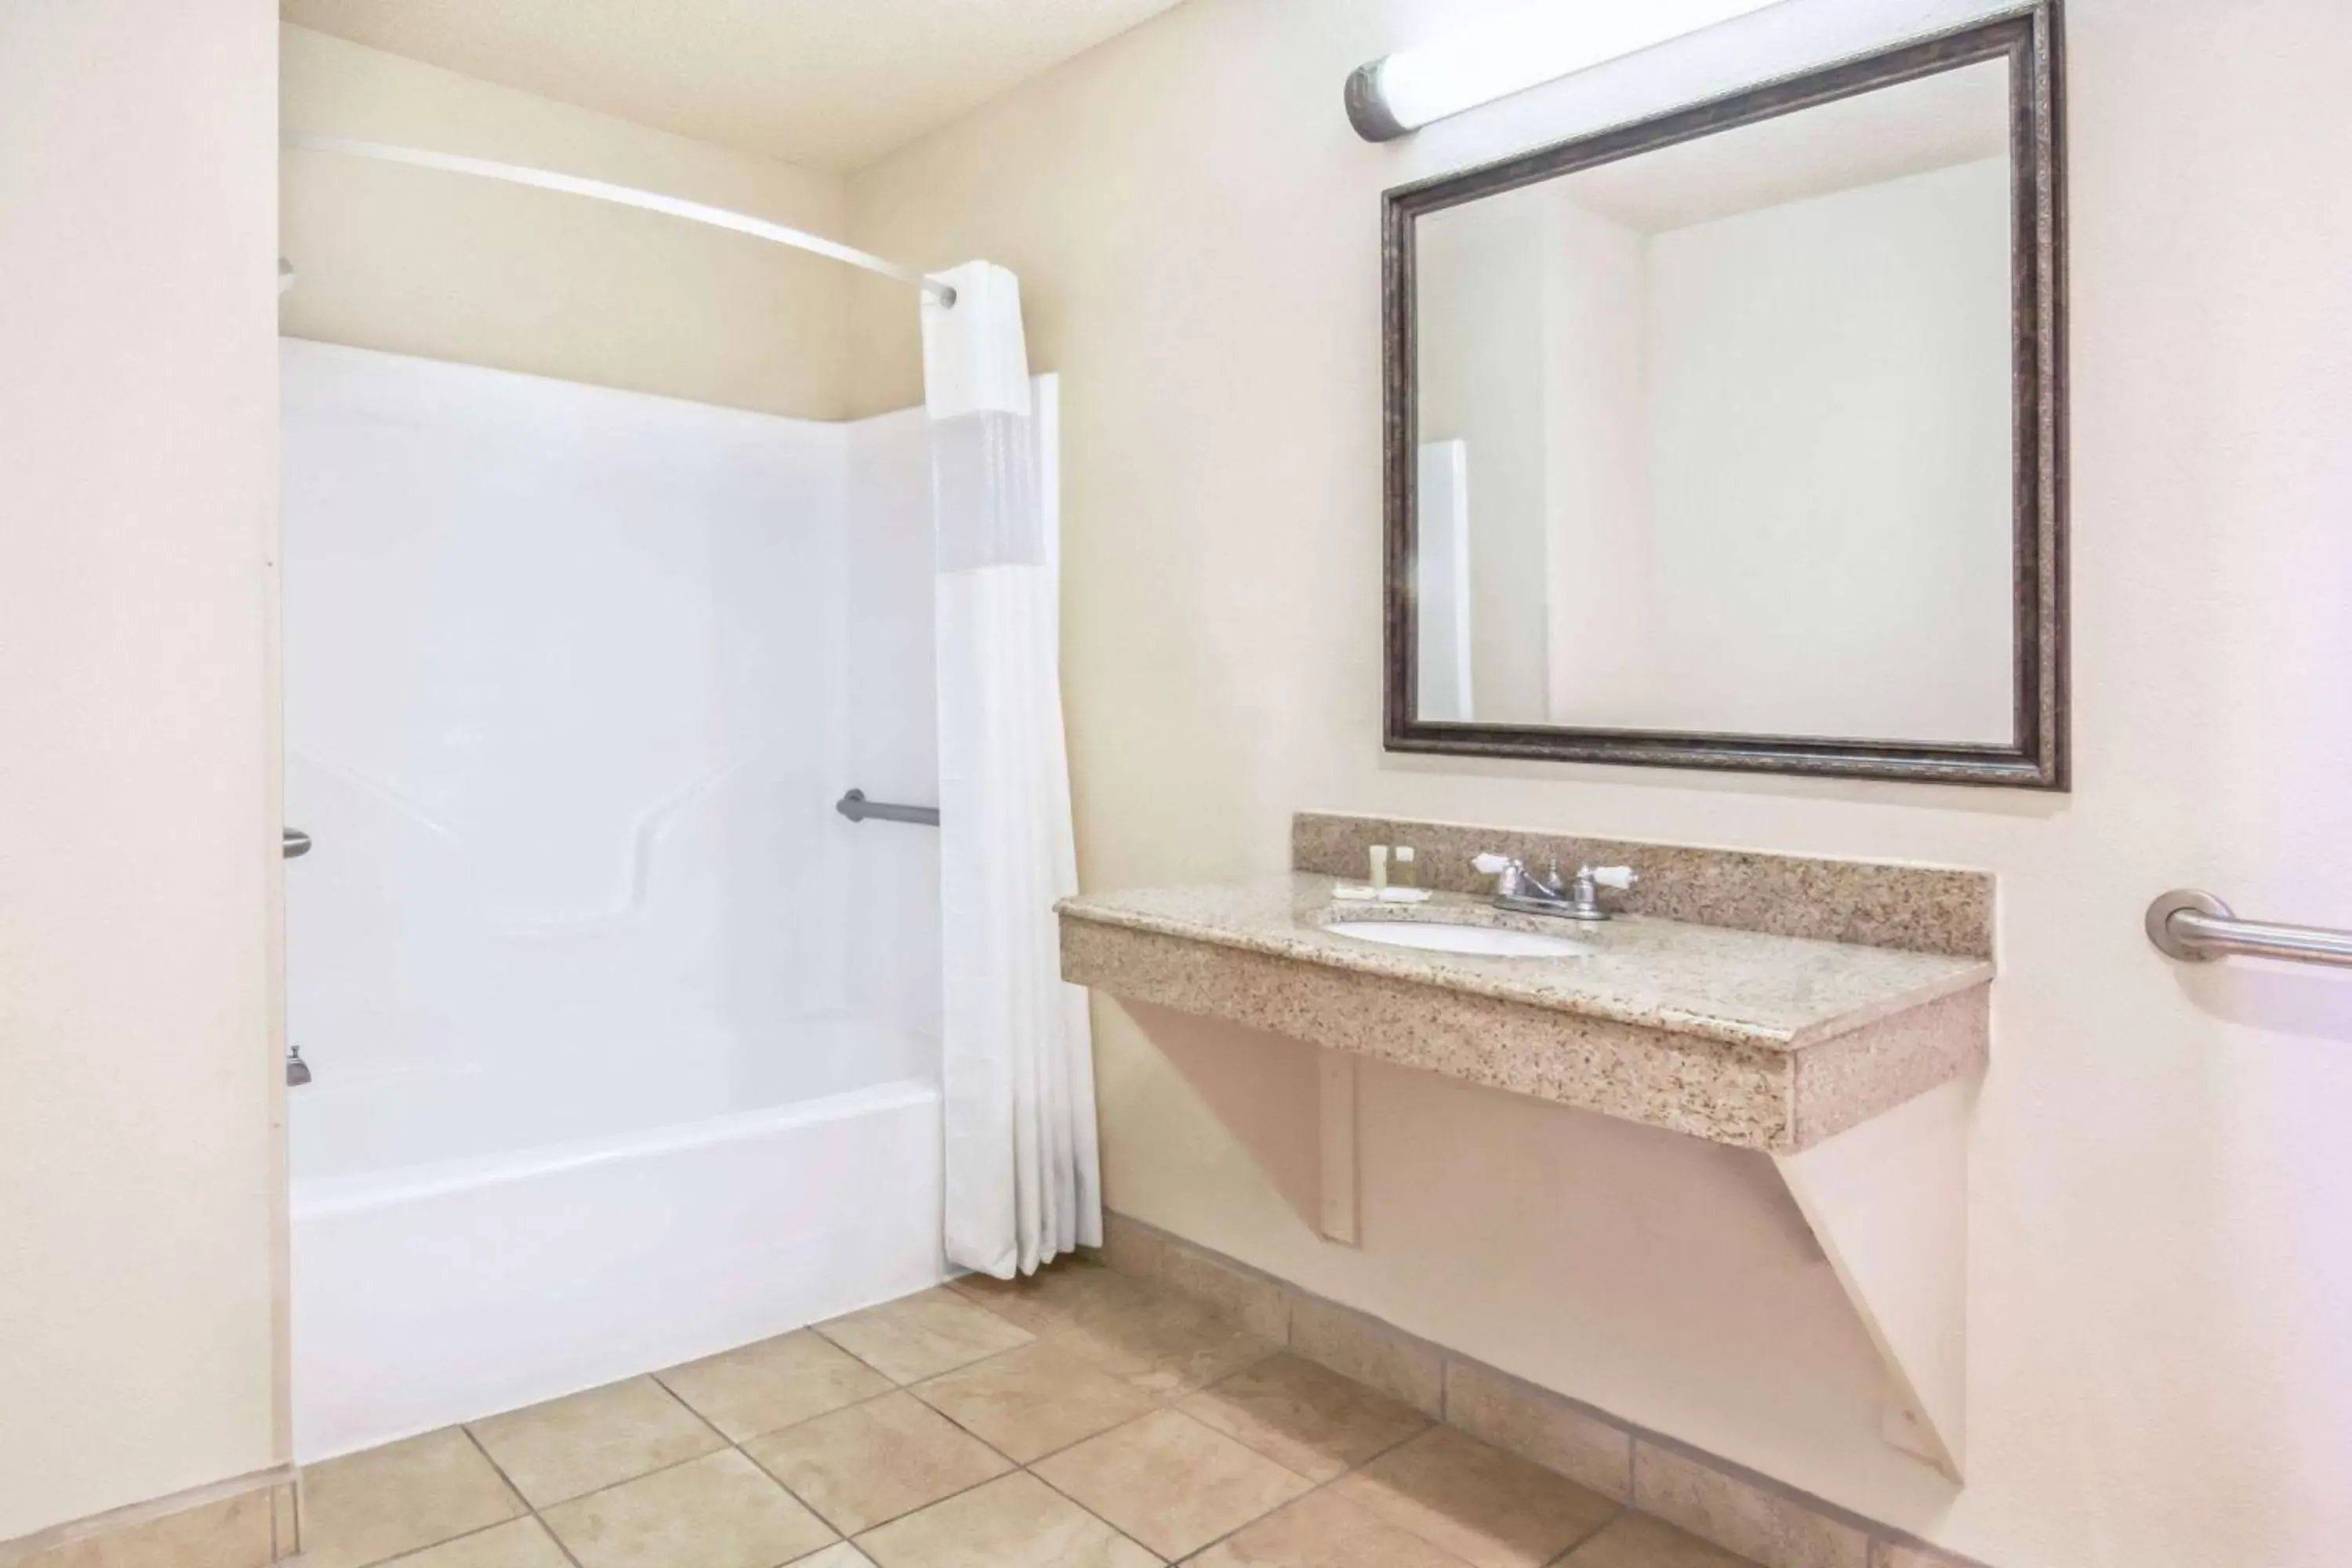 TV and multimedia, Bathroom in Days Inn by Wyndham San Antonio Interstate Hwy 35 North